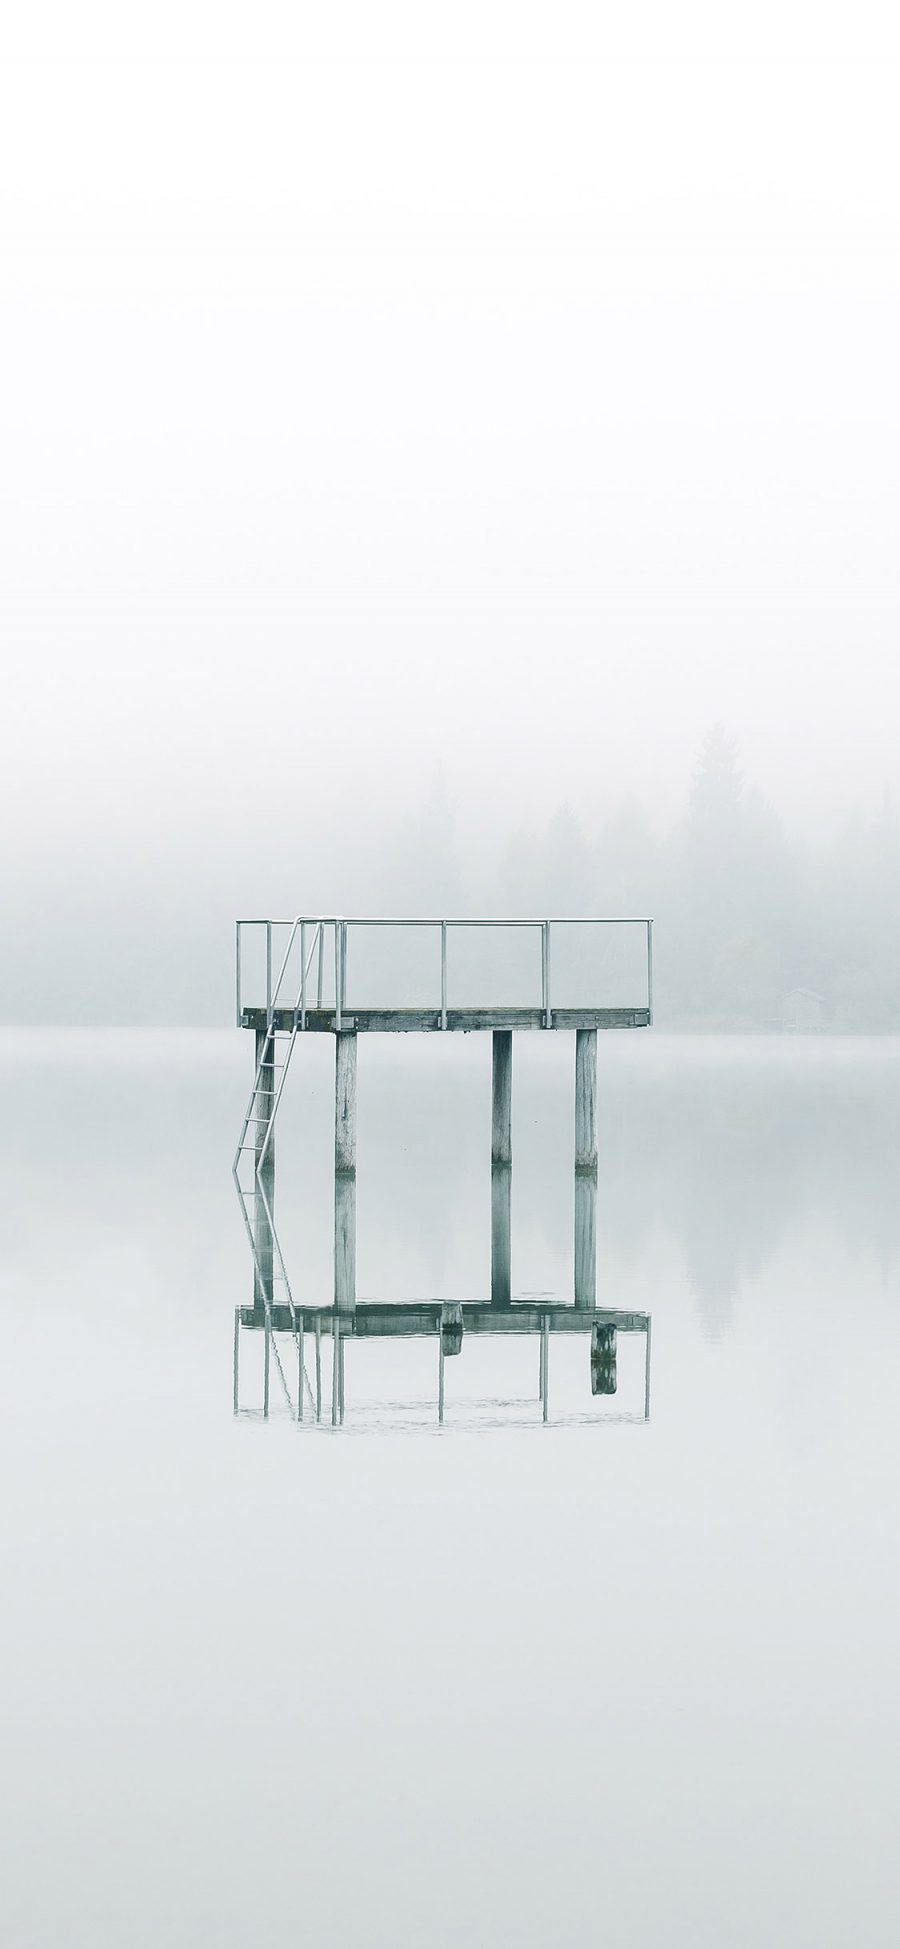 [2436×1125]对称 倒映 湖面 水平面 静止 苹果手机壁纸图片